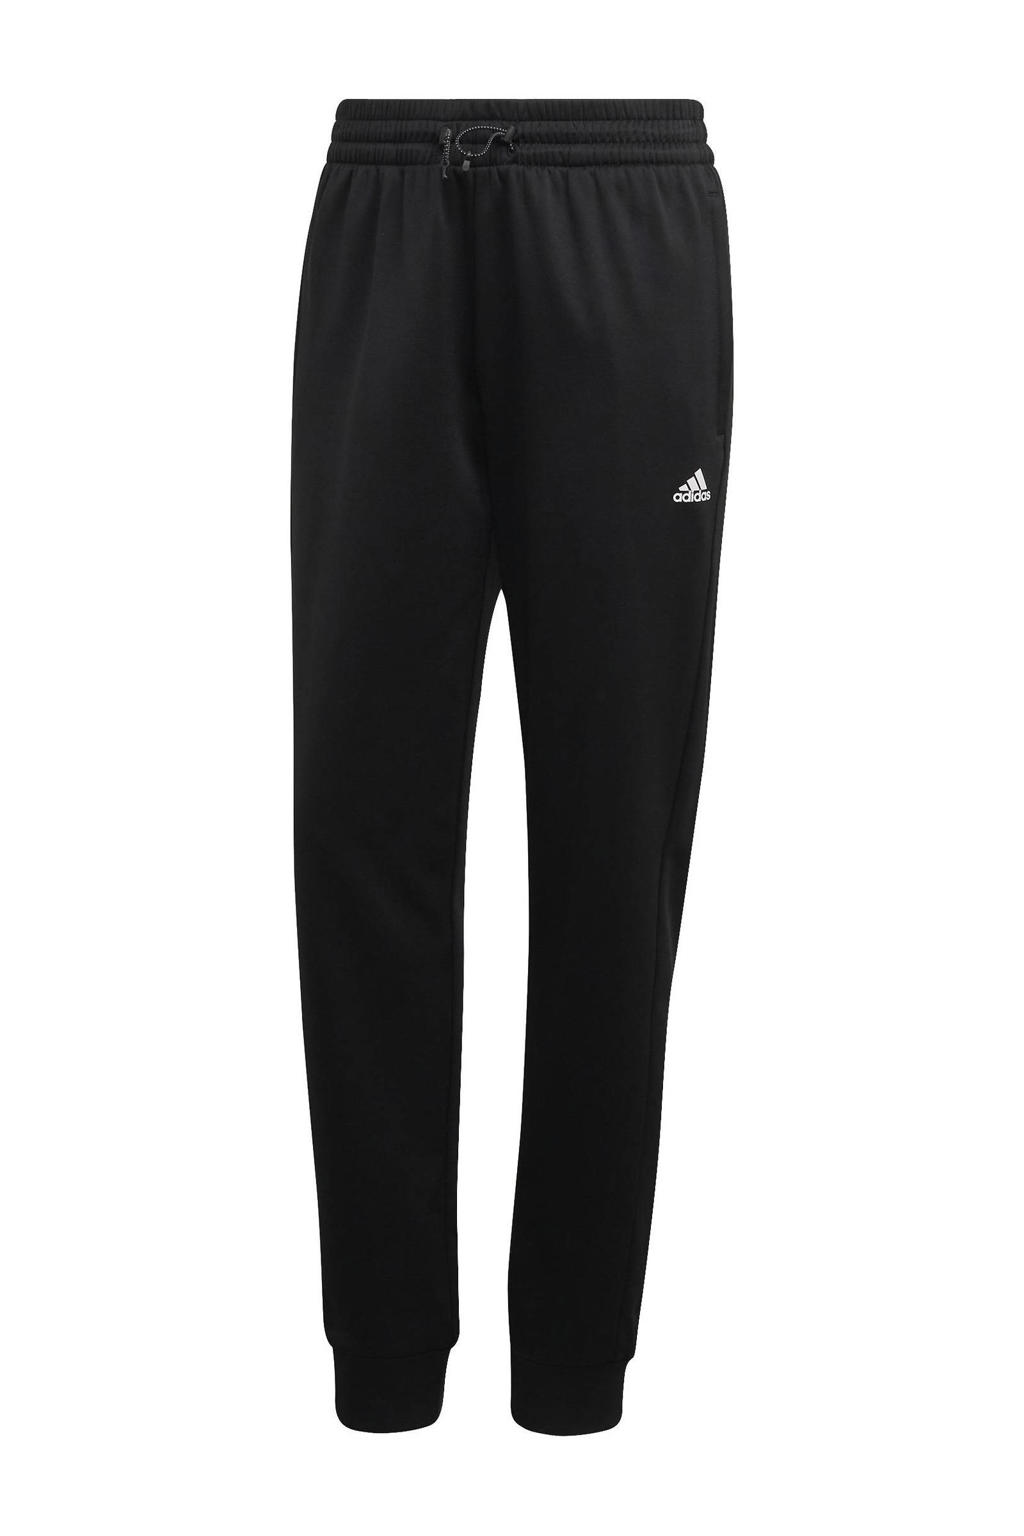 adidas Performance joggingbroek fleece zwart/wit